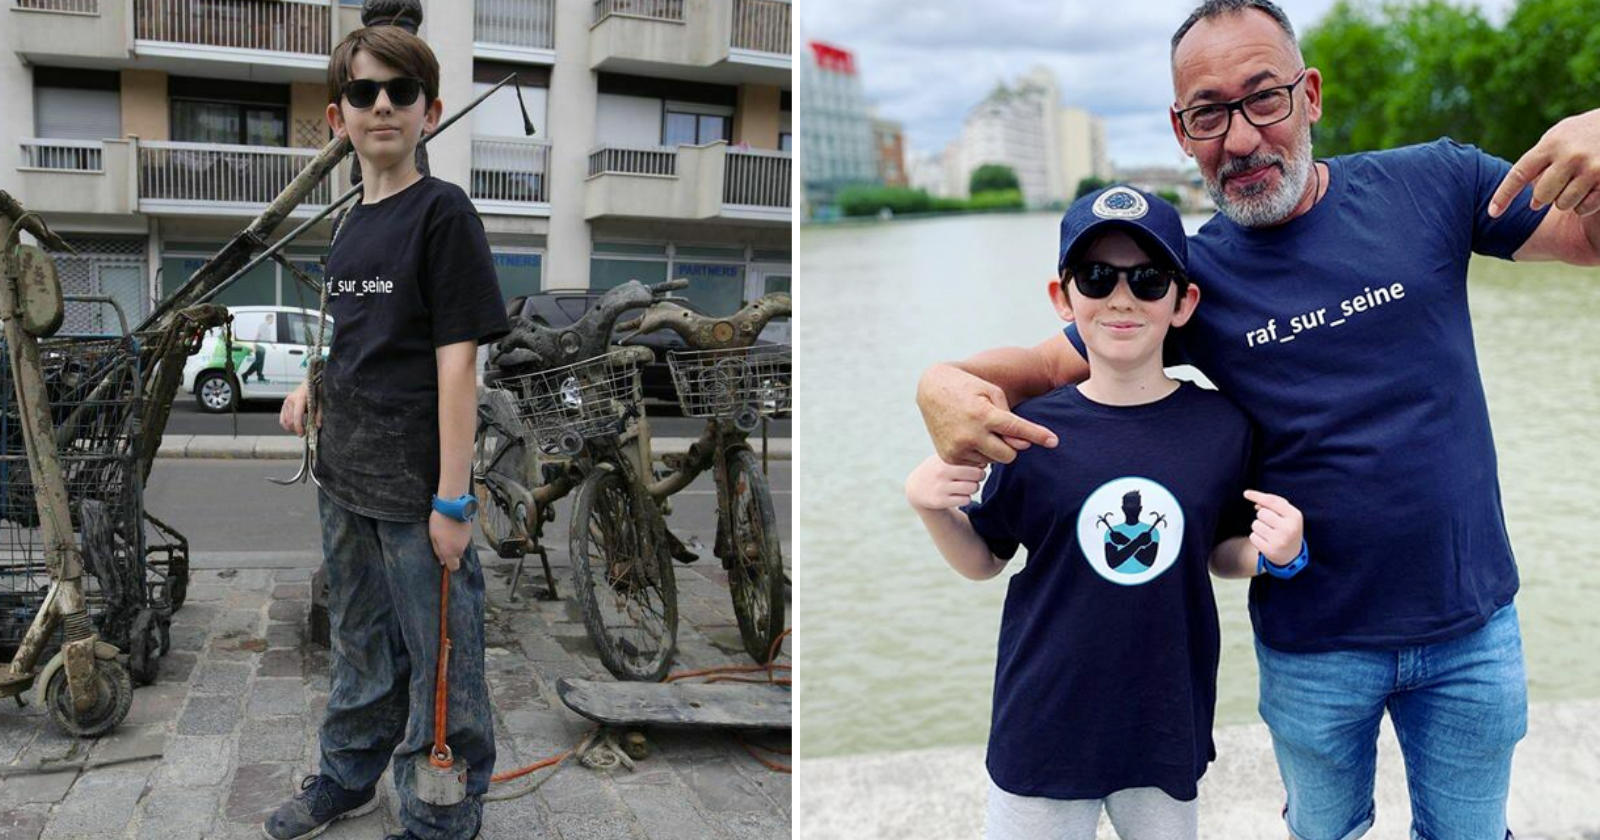 Garoto de apenas 10 anos faz limpeza no rio Sena de forma completamente inusitada